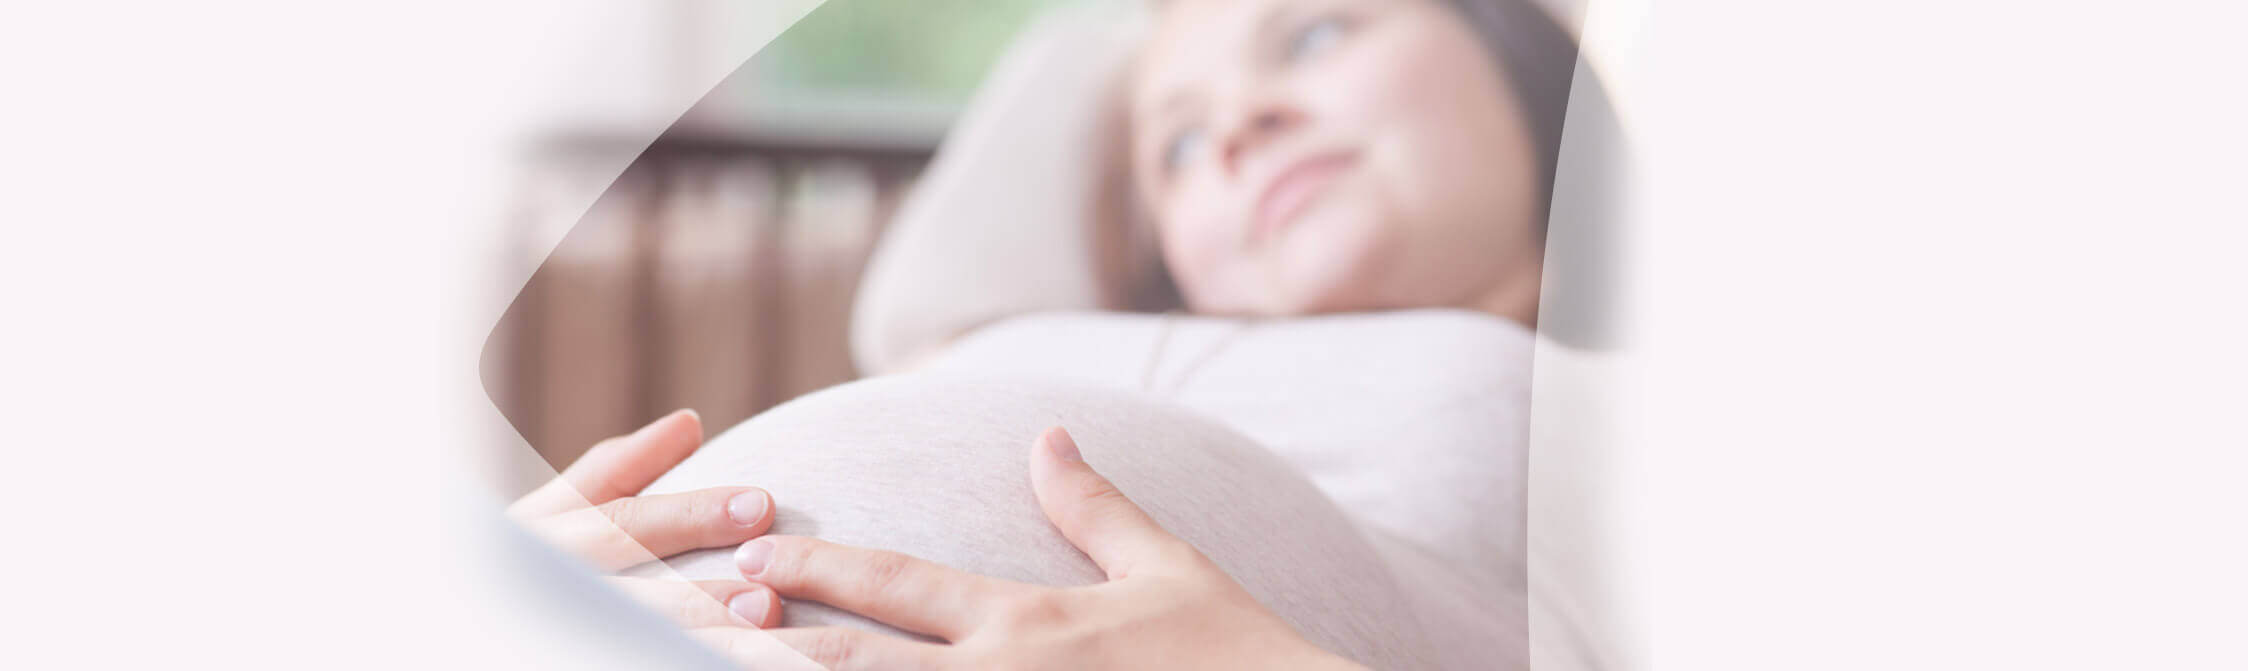 Une femme enceinte est couchée sur une canapé et tient son ventre